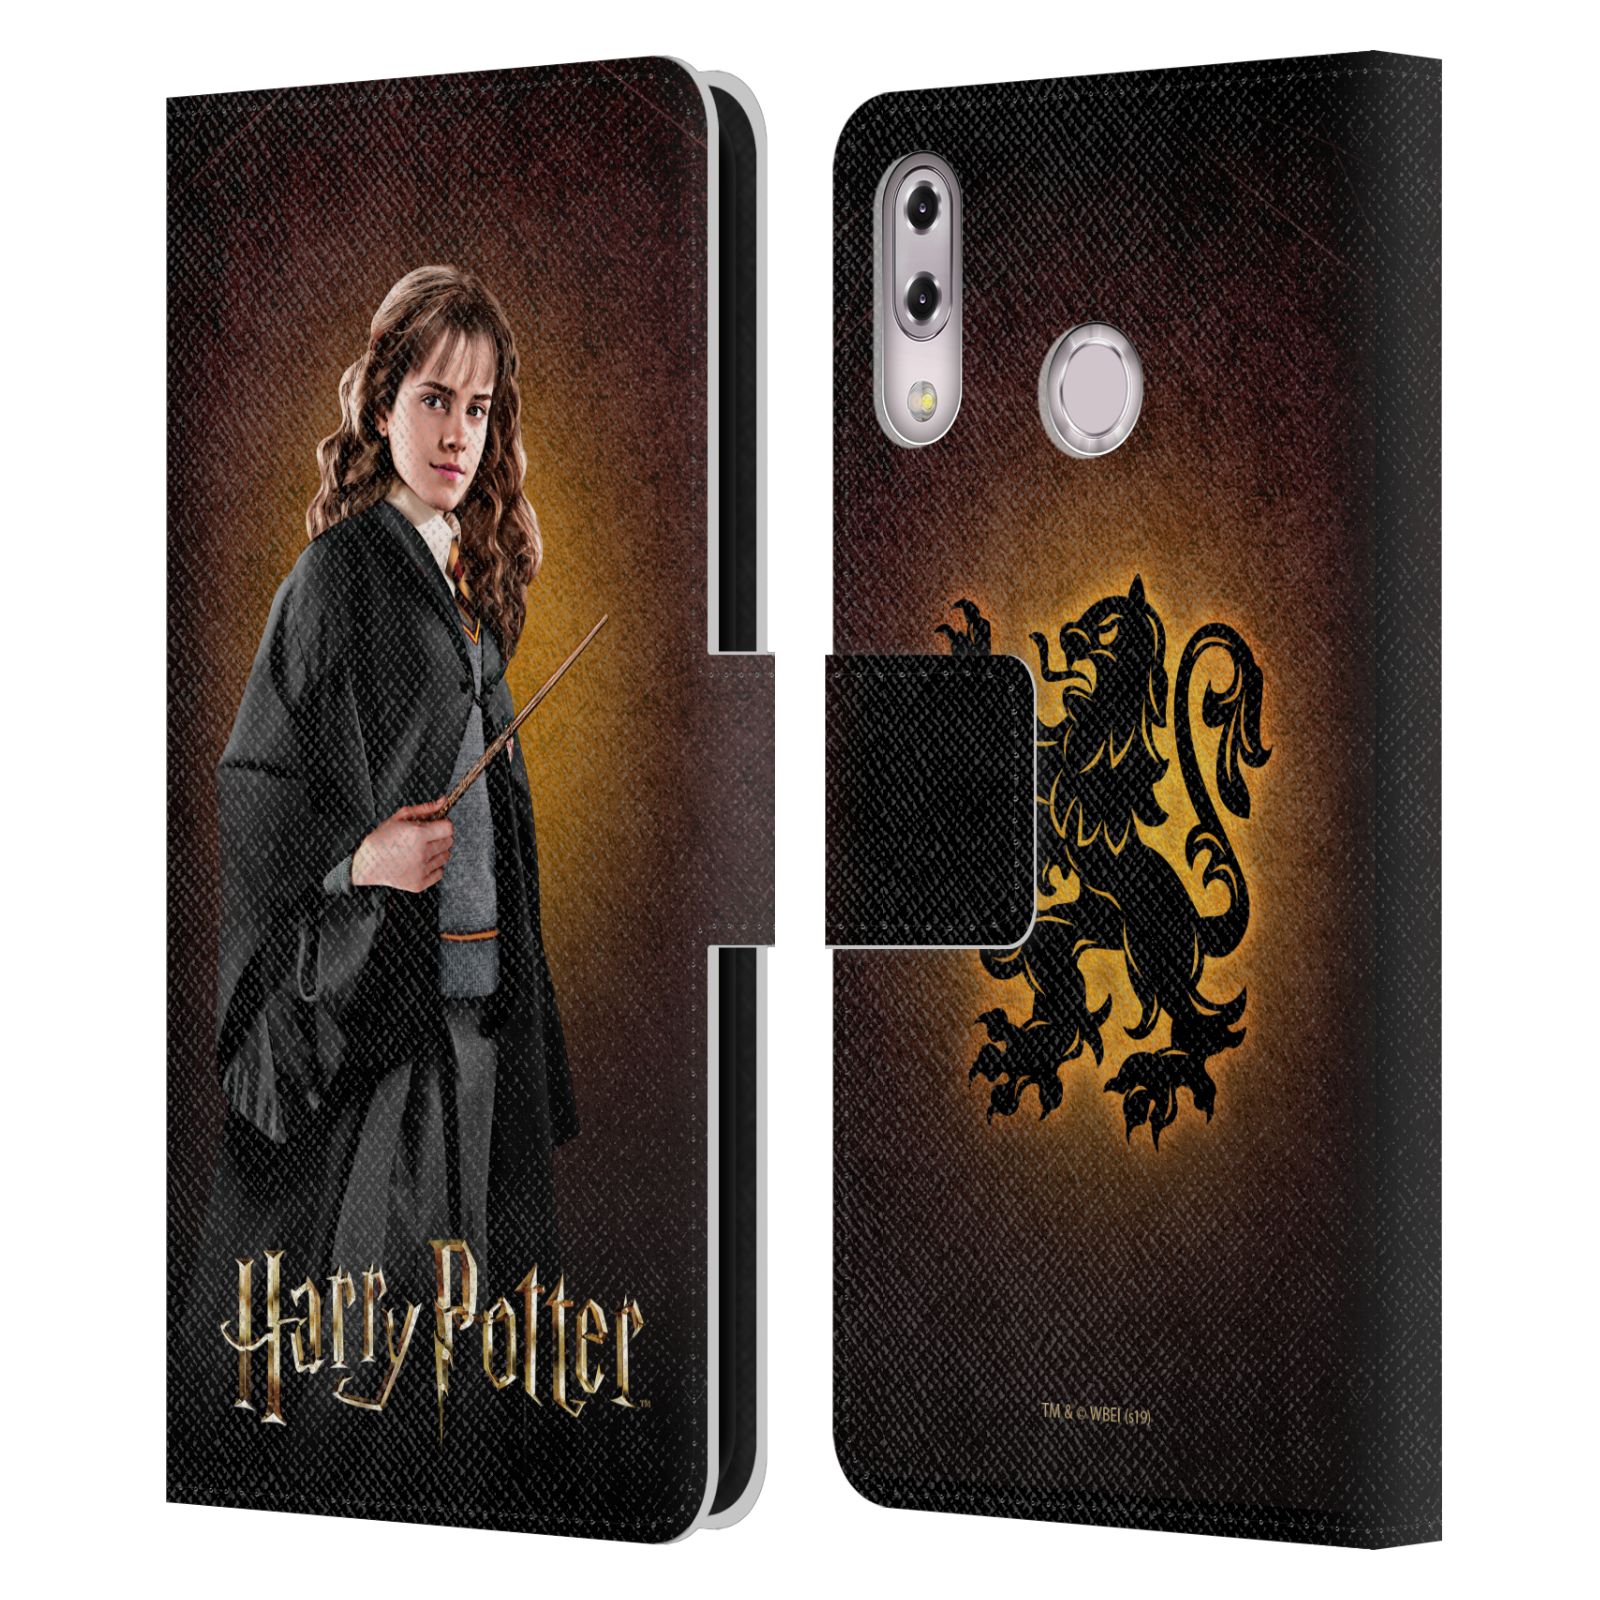 Pouzdro na mobil Asus Zenfone 5z ZS620KL, 5 ZE620KL  - HEAD CASE - Harry Potter - Hermiona Grangerová